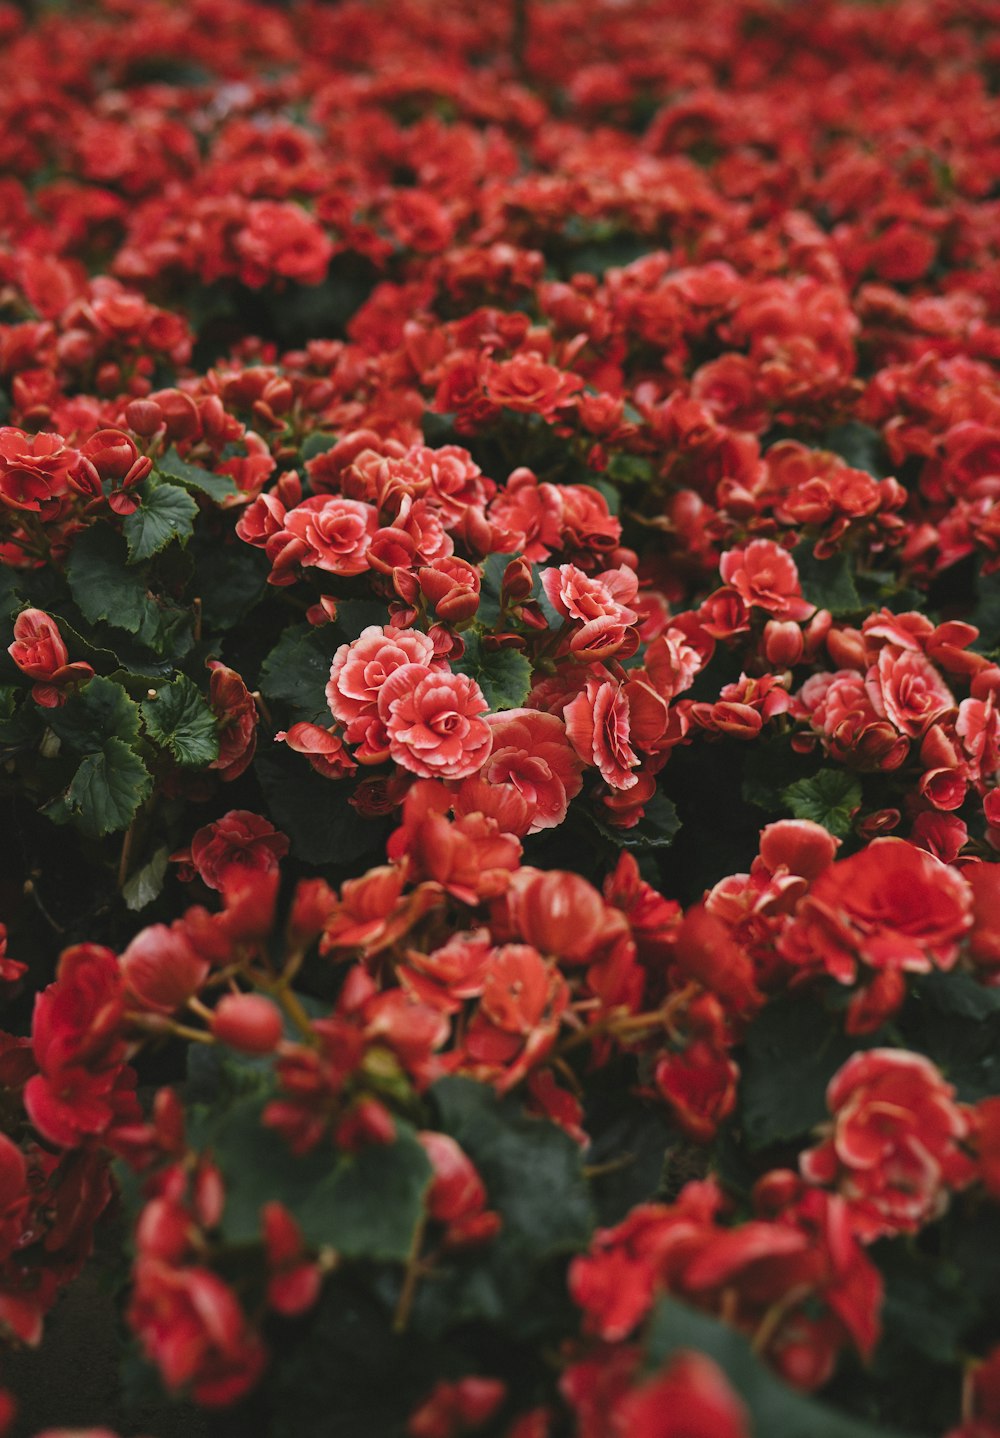 赤い花びらの花畑のクローズアップ写真